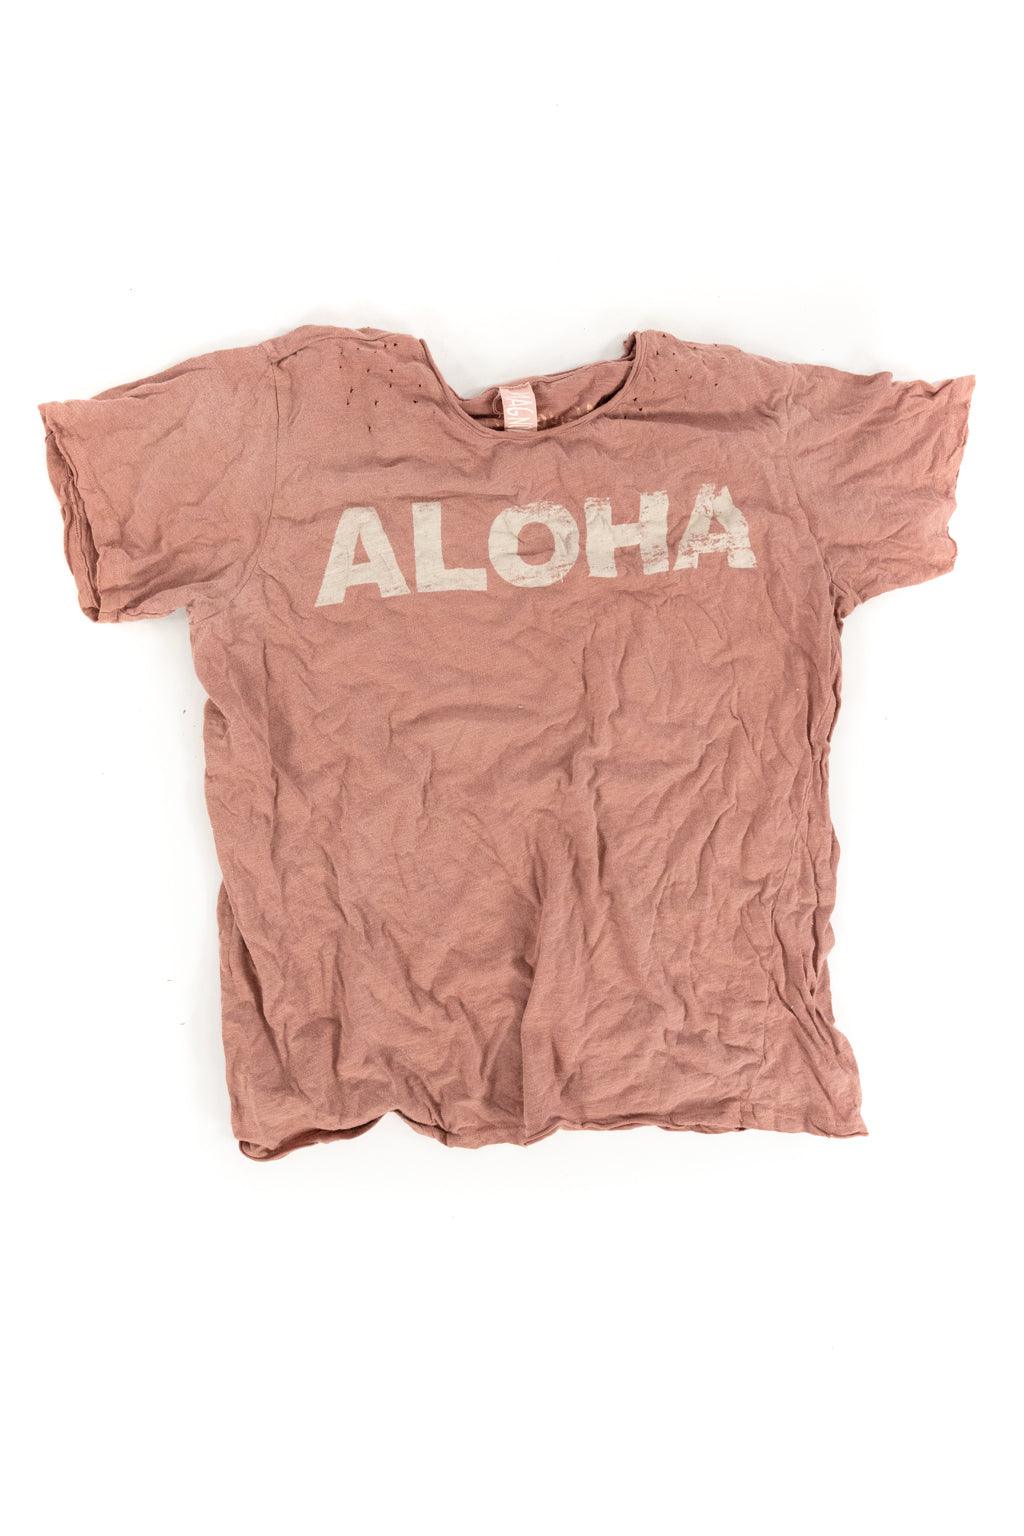 Aloha T - Magnolia Pearl Clothing